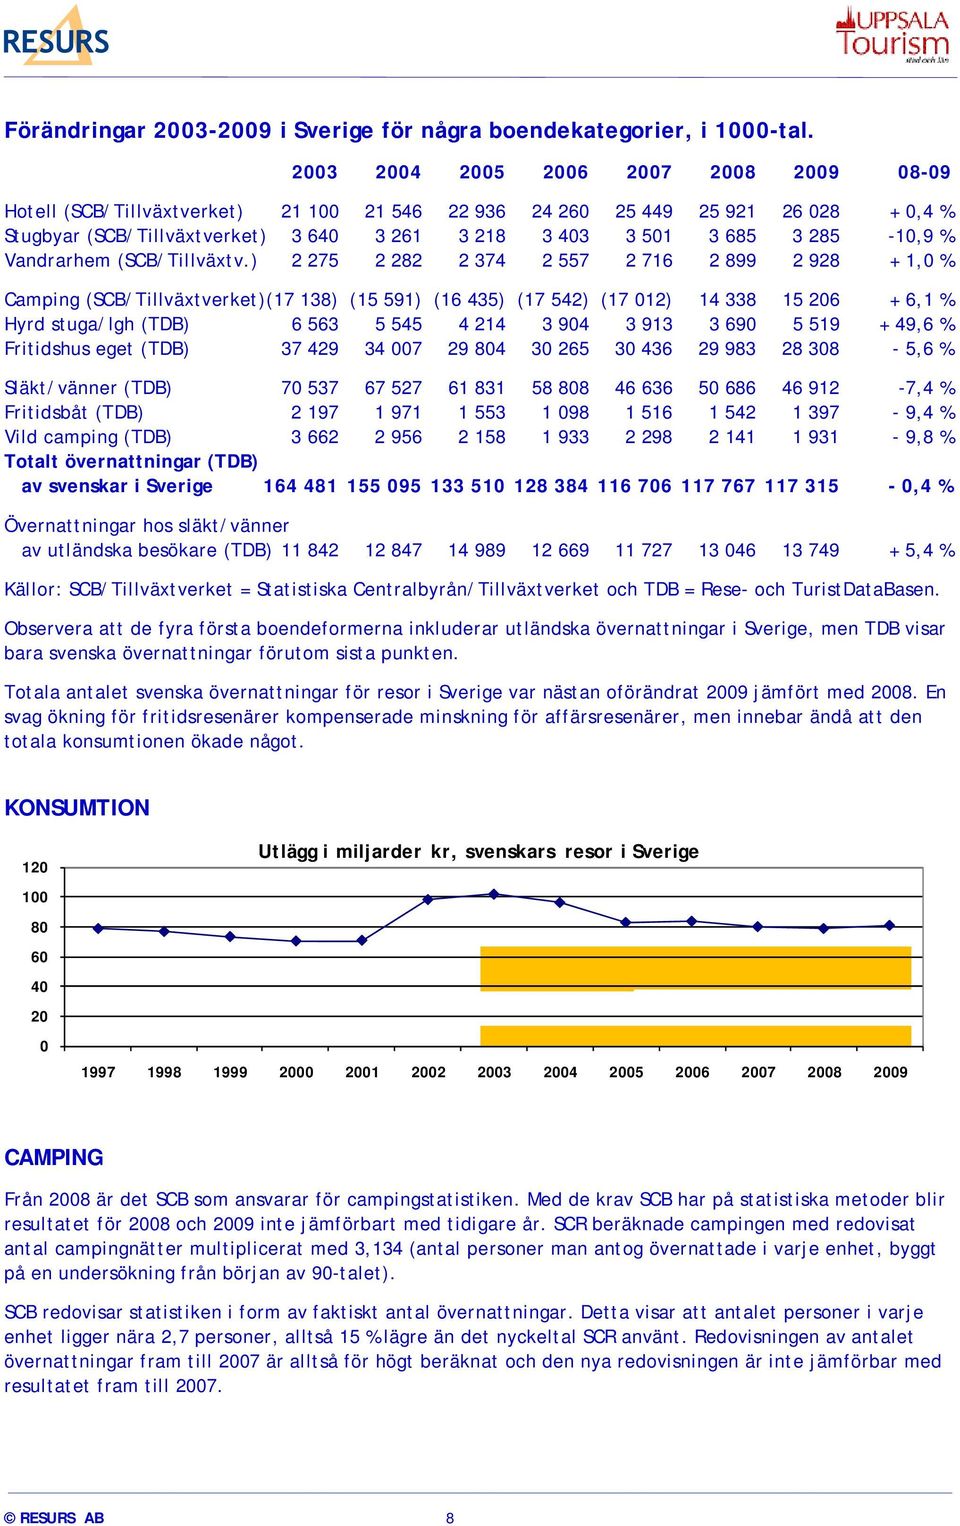 285-10,9 % Vandrarhem (SCB/Tillväxtv.